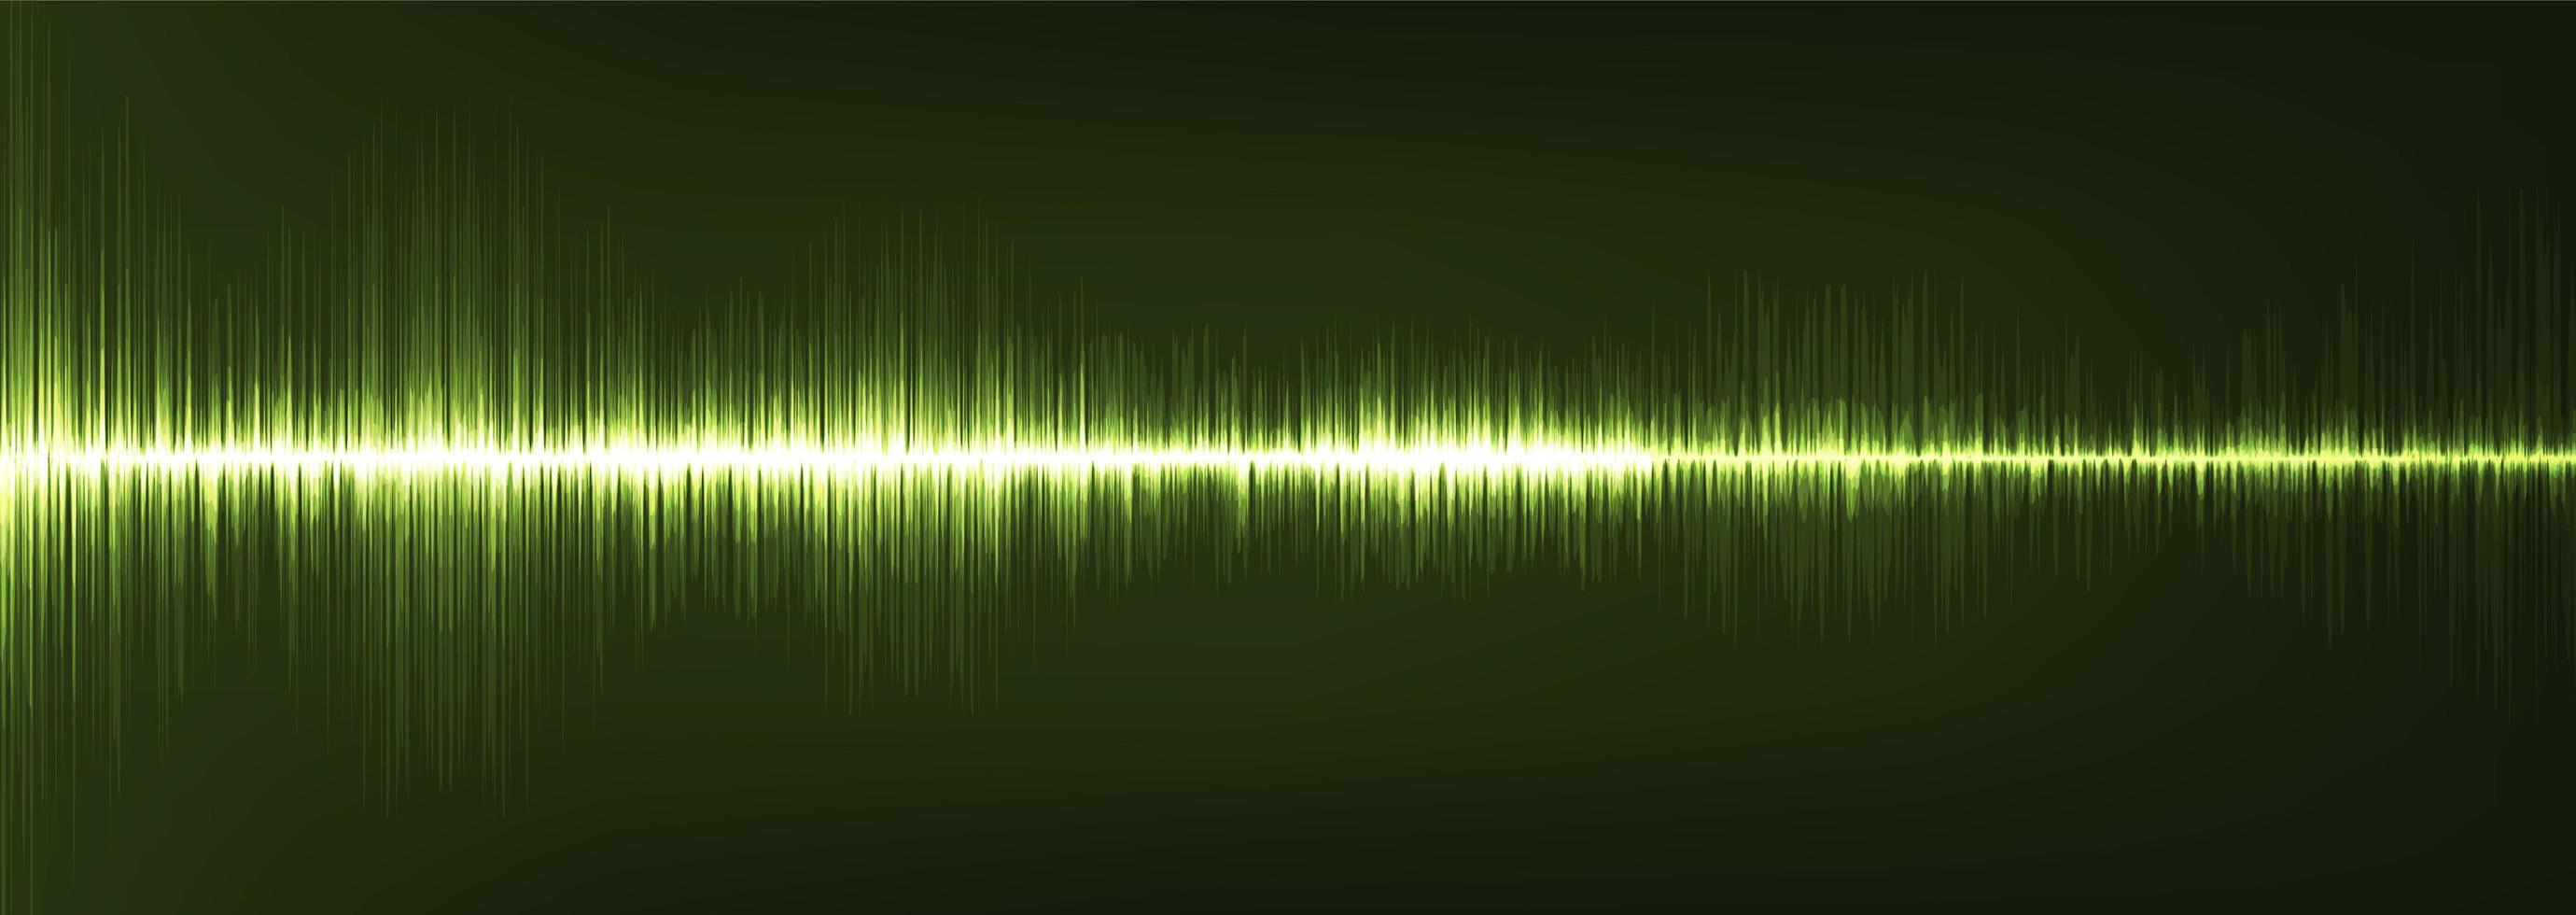 panorama verde onda de sonido digital baja y alta escala de richter vector